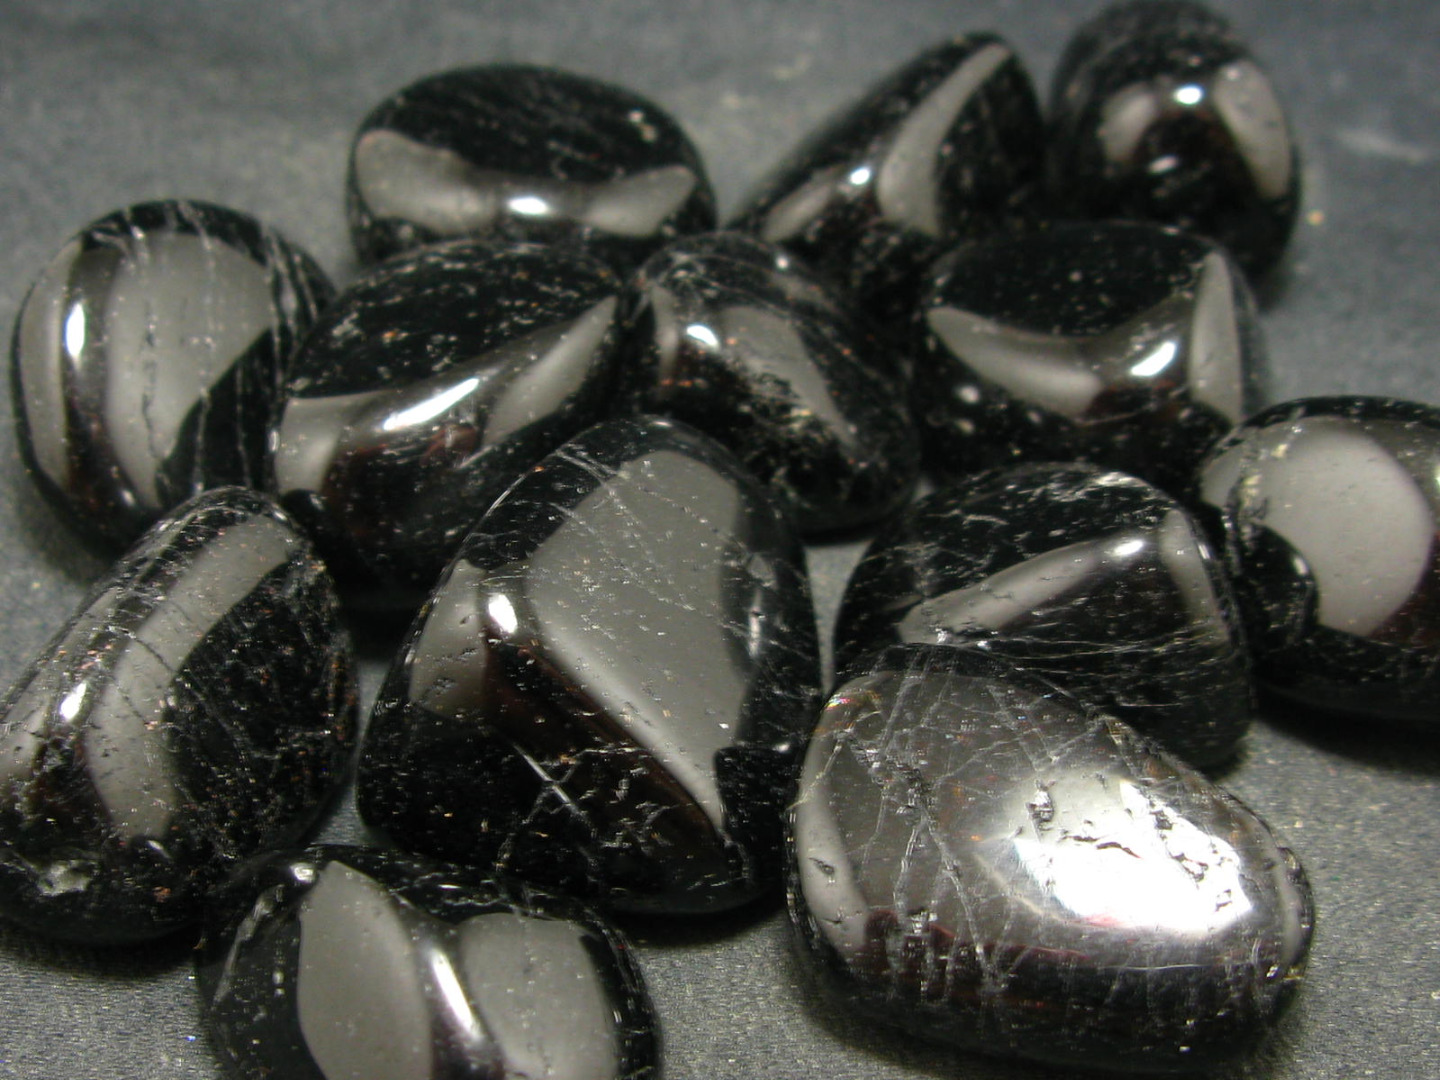 đá sapphire đen cho người sinh năm 1981